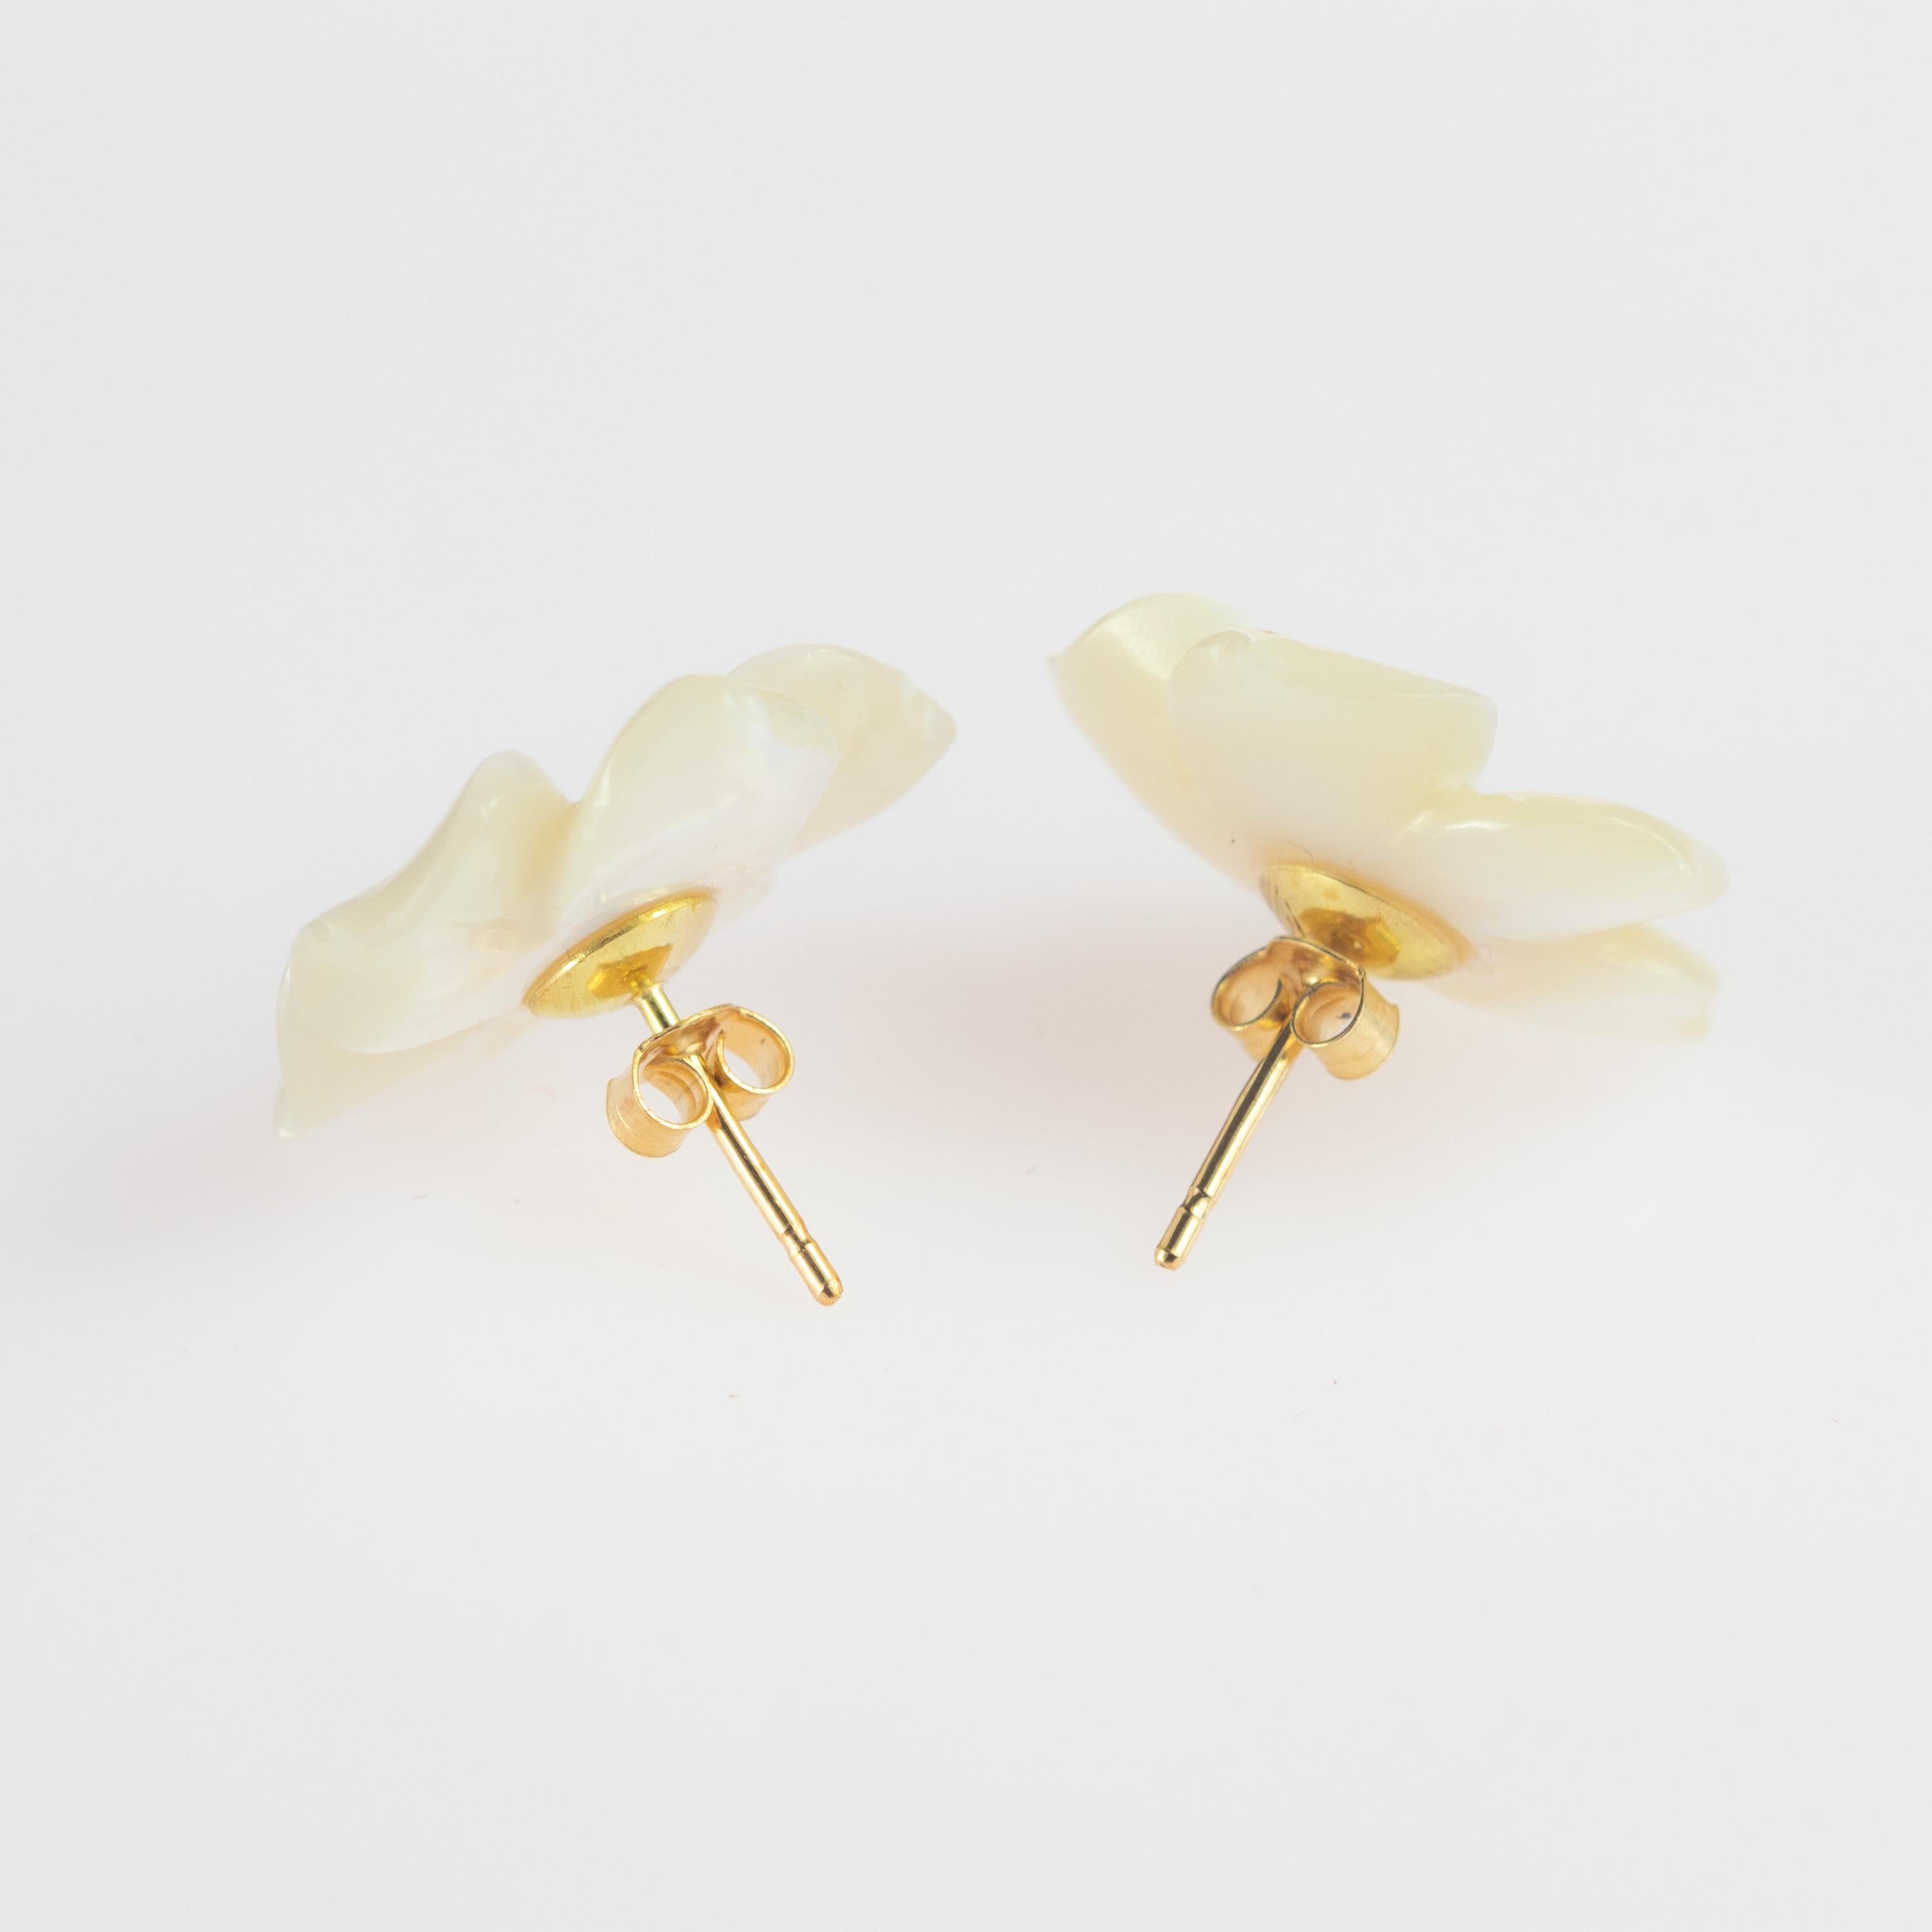 white flower earrings